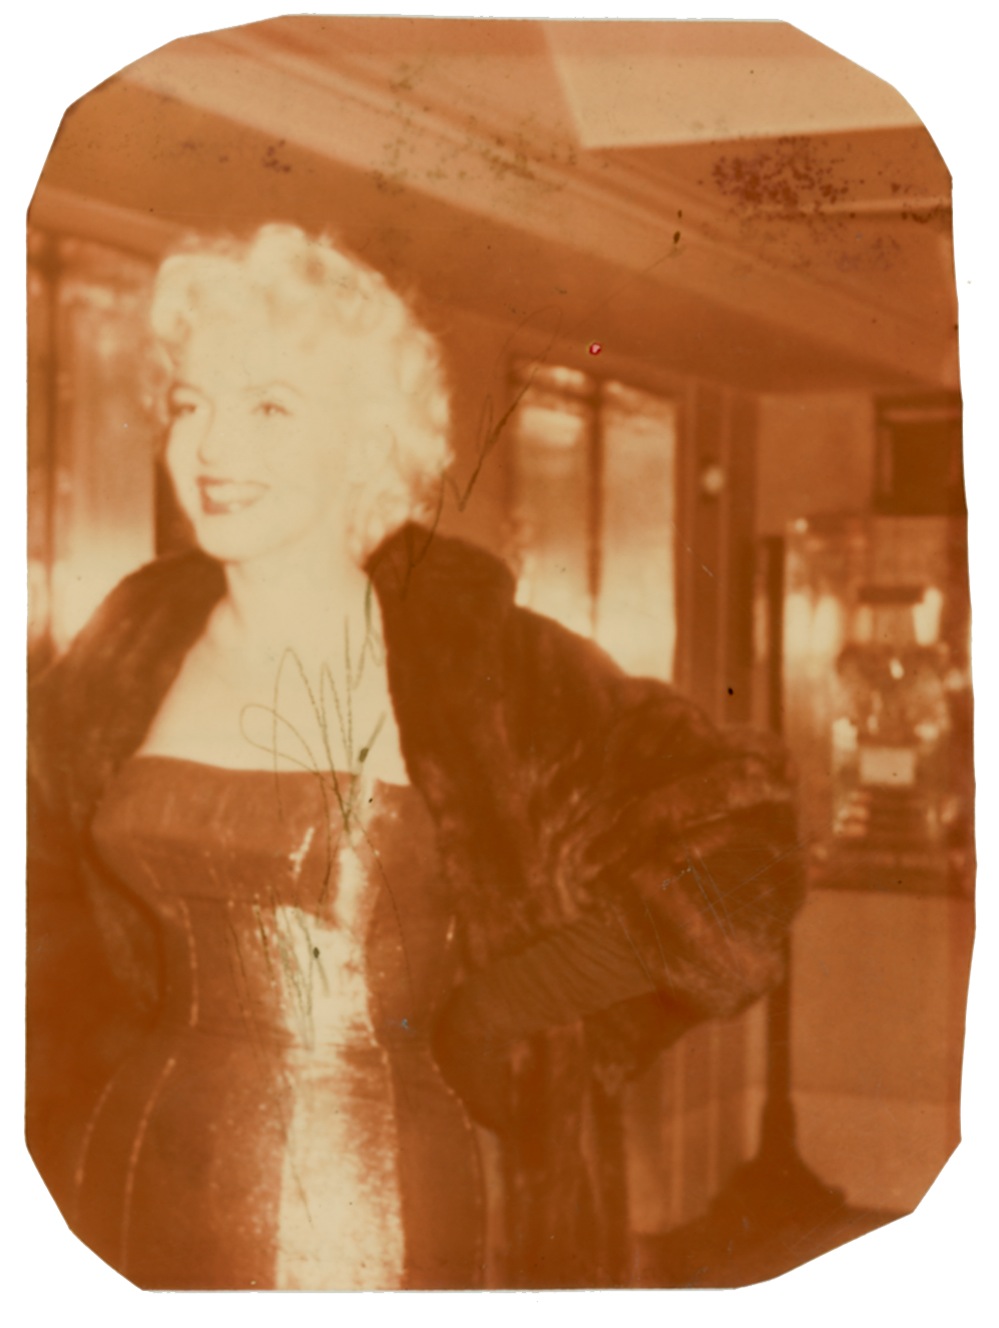 Lot #1136 Marilyn Monroe